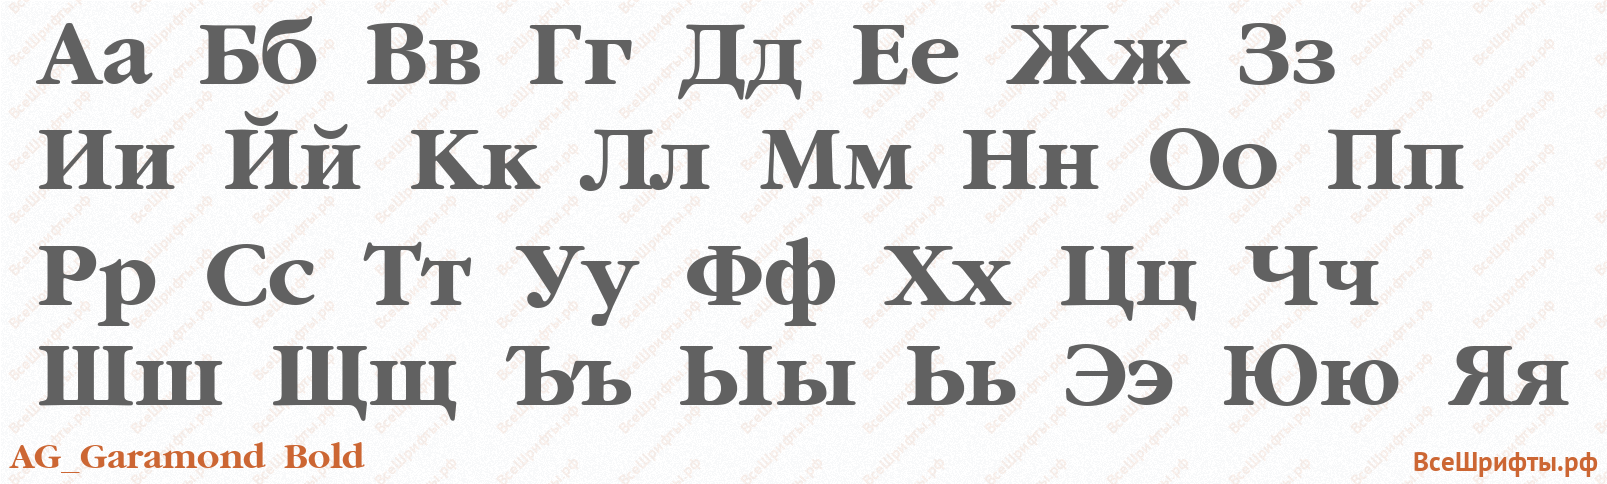 Шрифт AG_Garamond Bold с русскими буквами